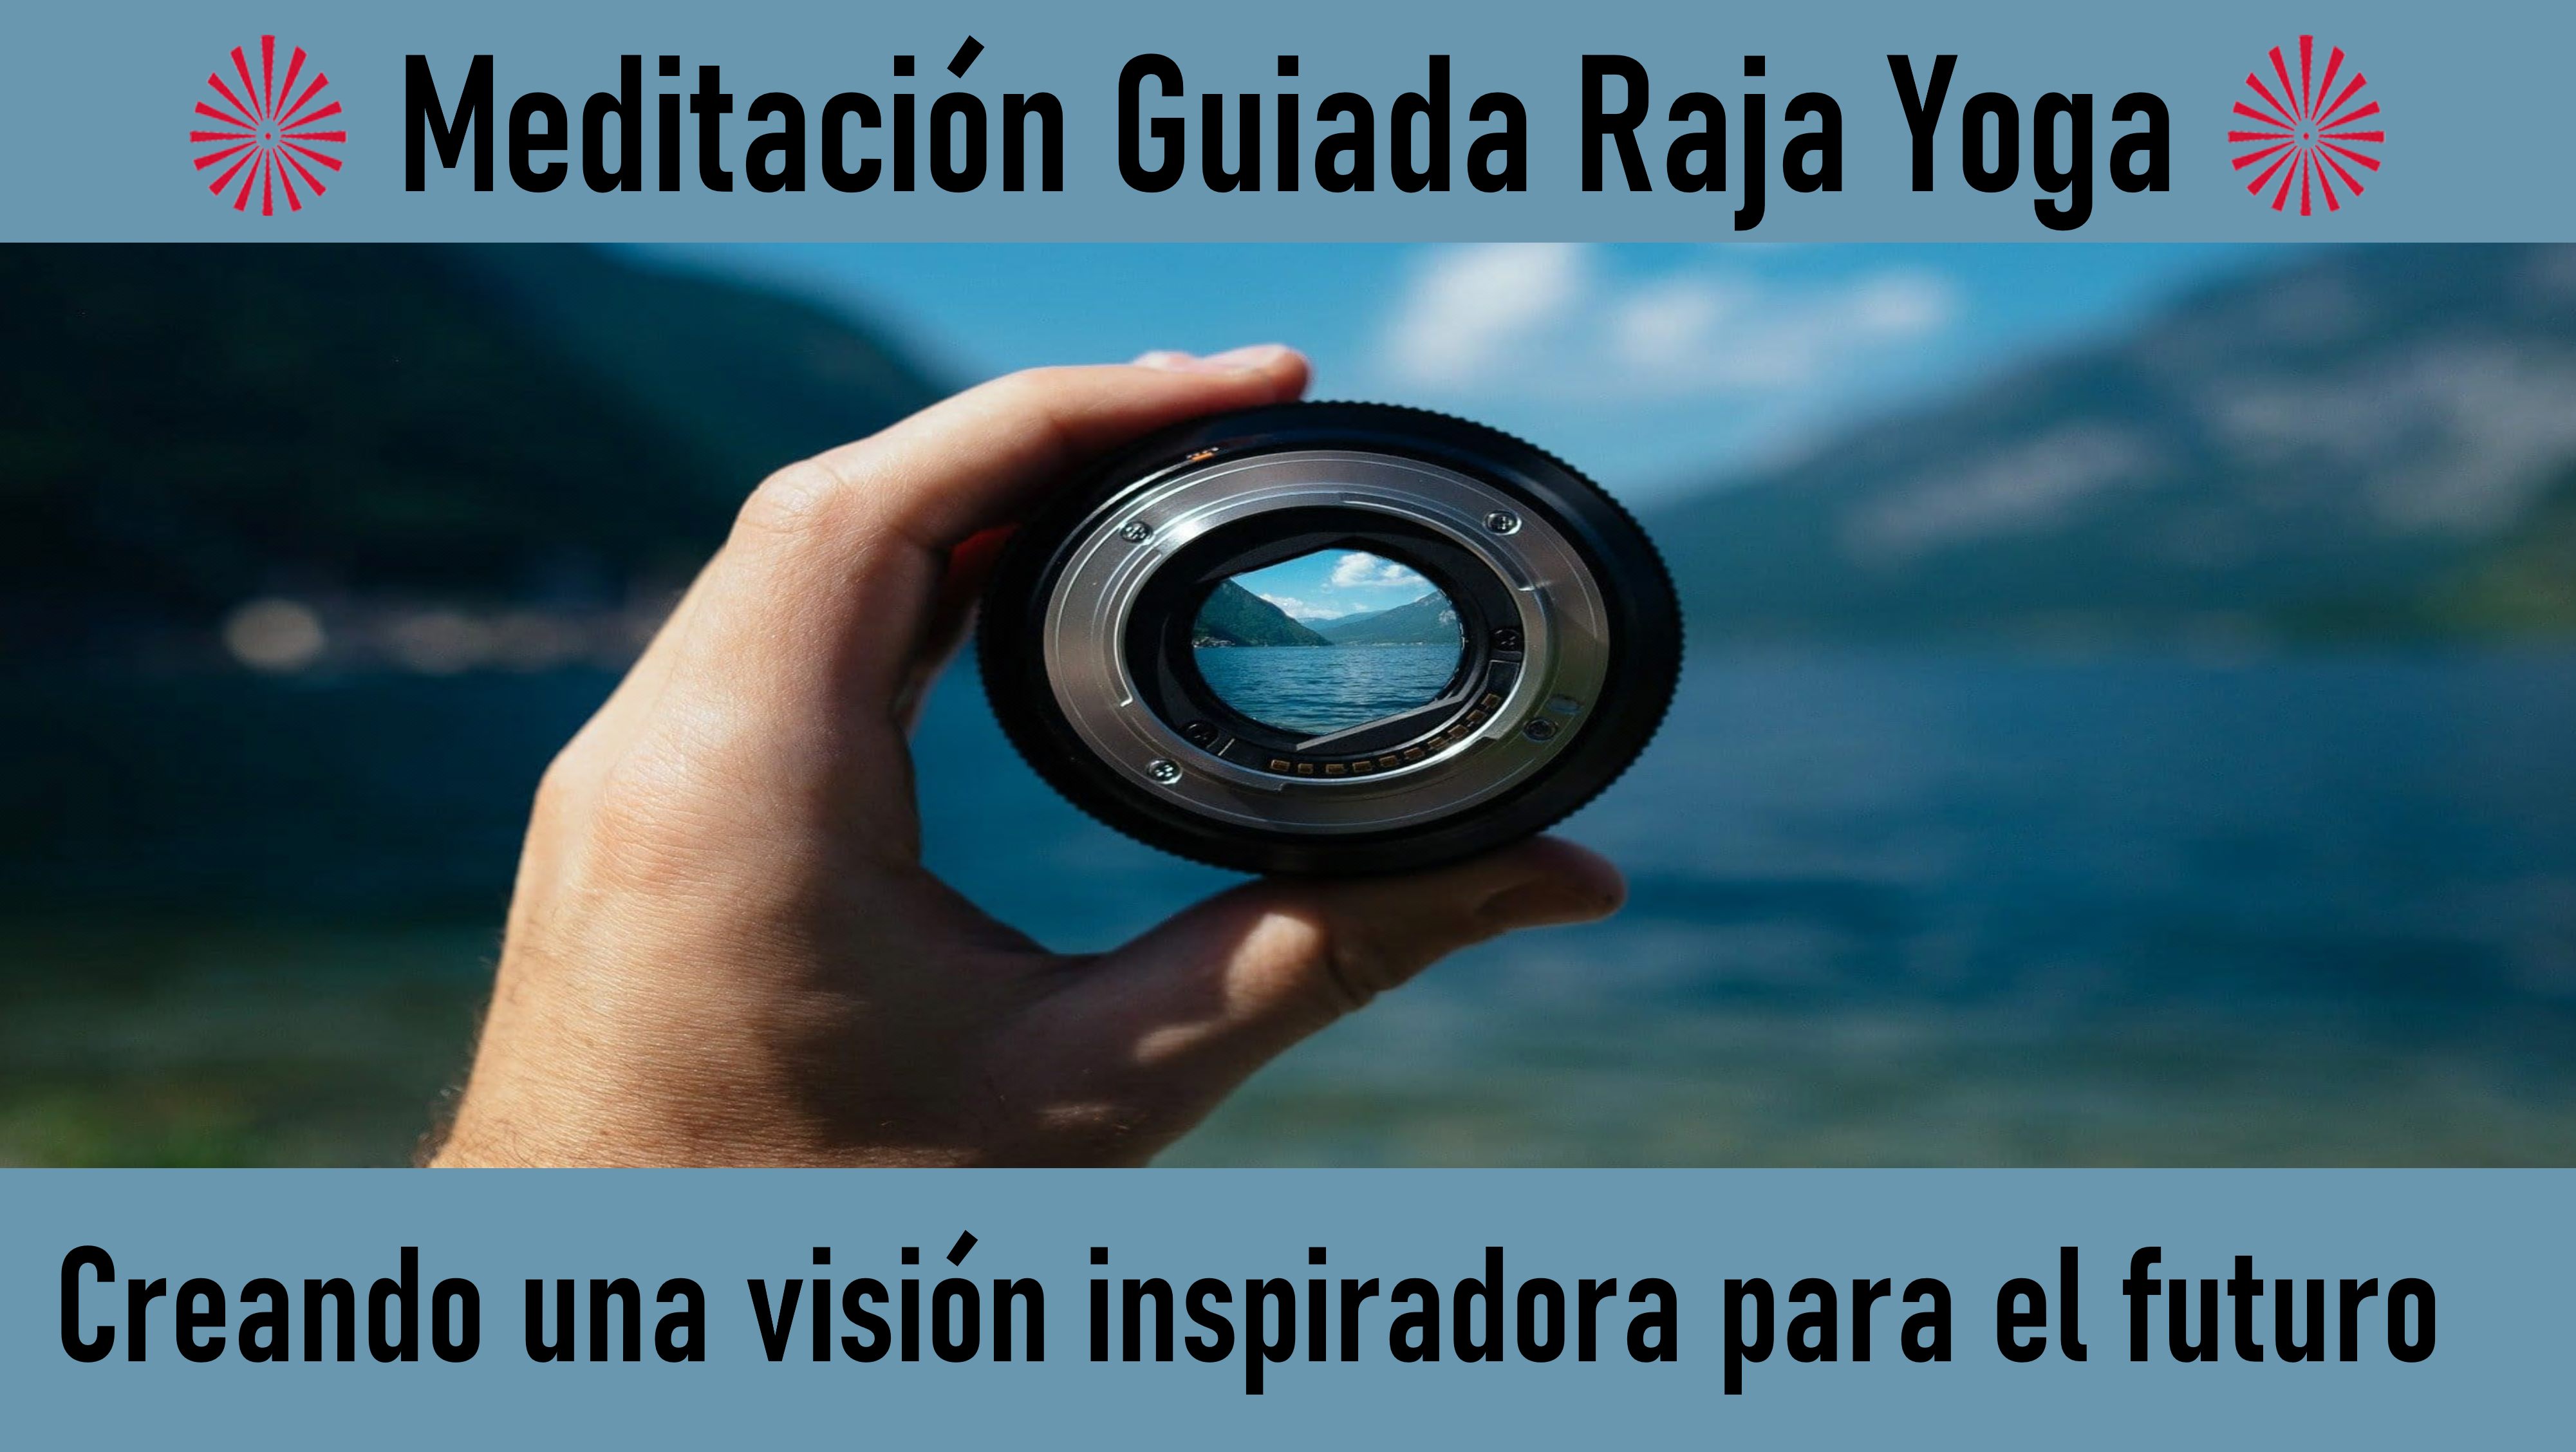 Meditación Raja Yoga: Creando una Visión Inspiradora para el Futuro (14 Mayo 2020) On-line desde Madrid